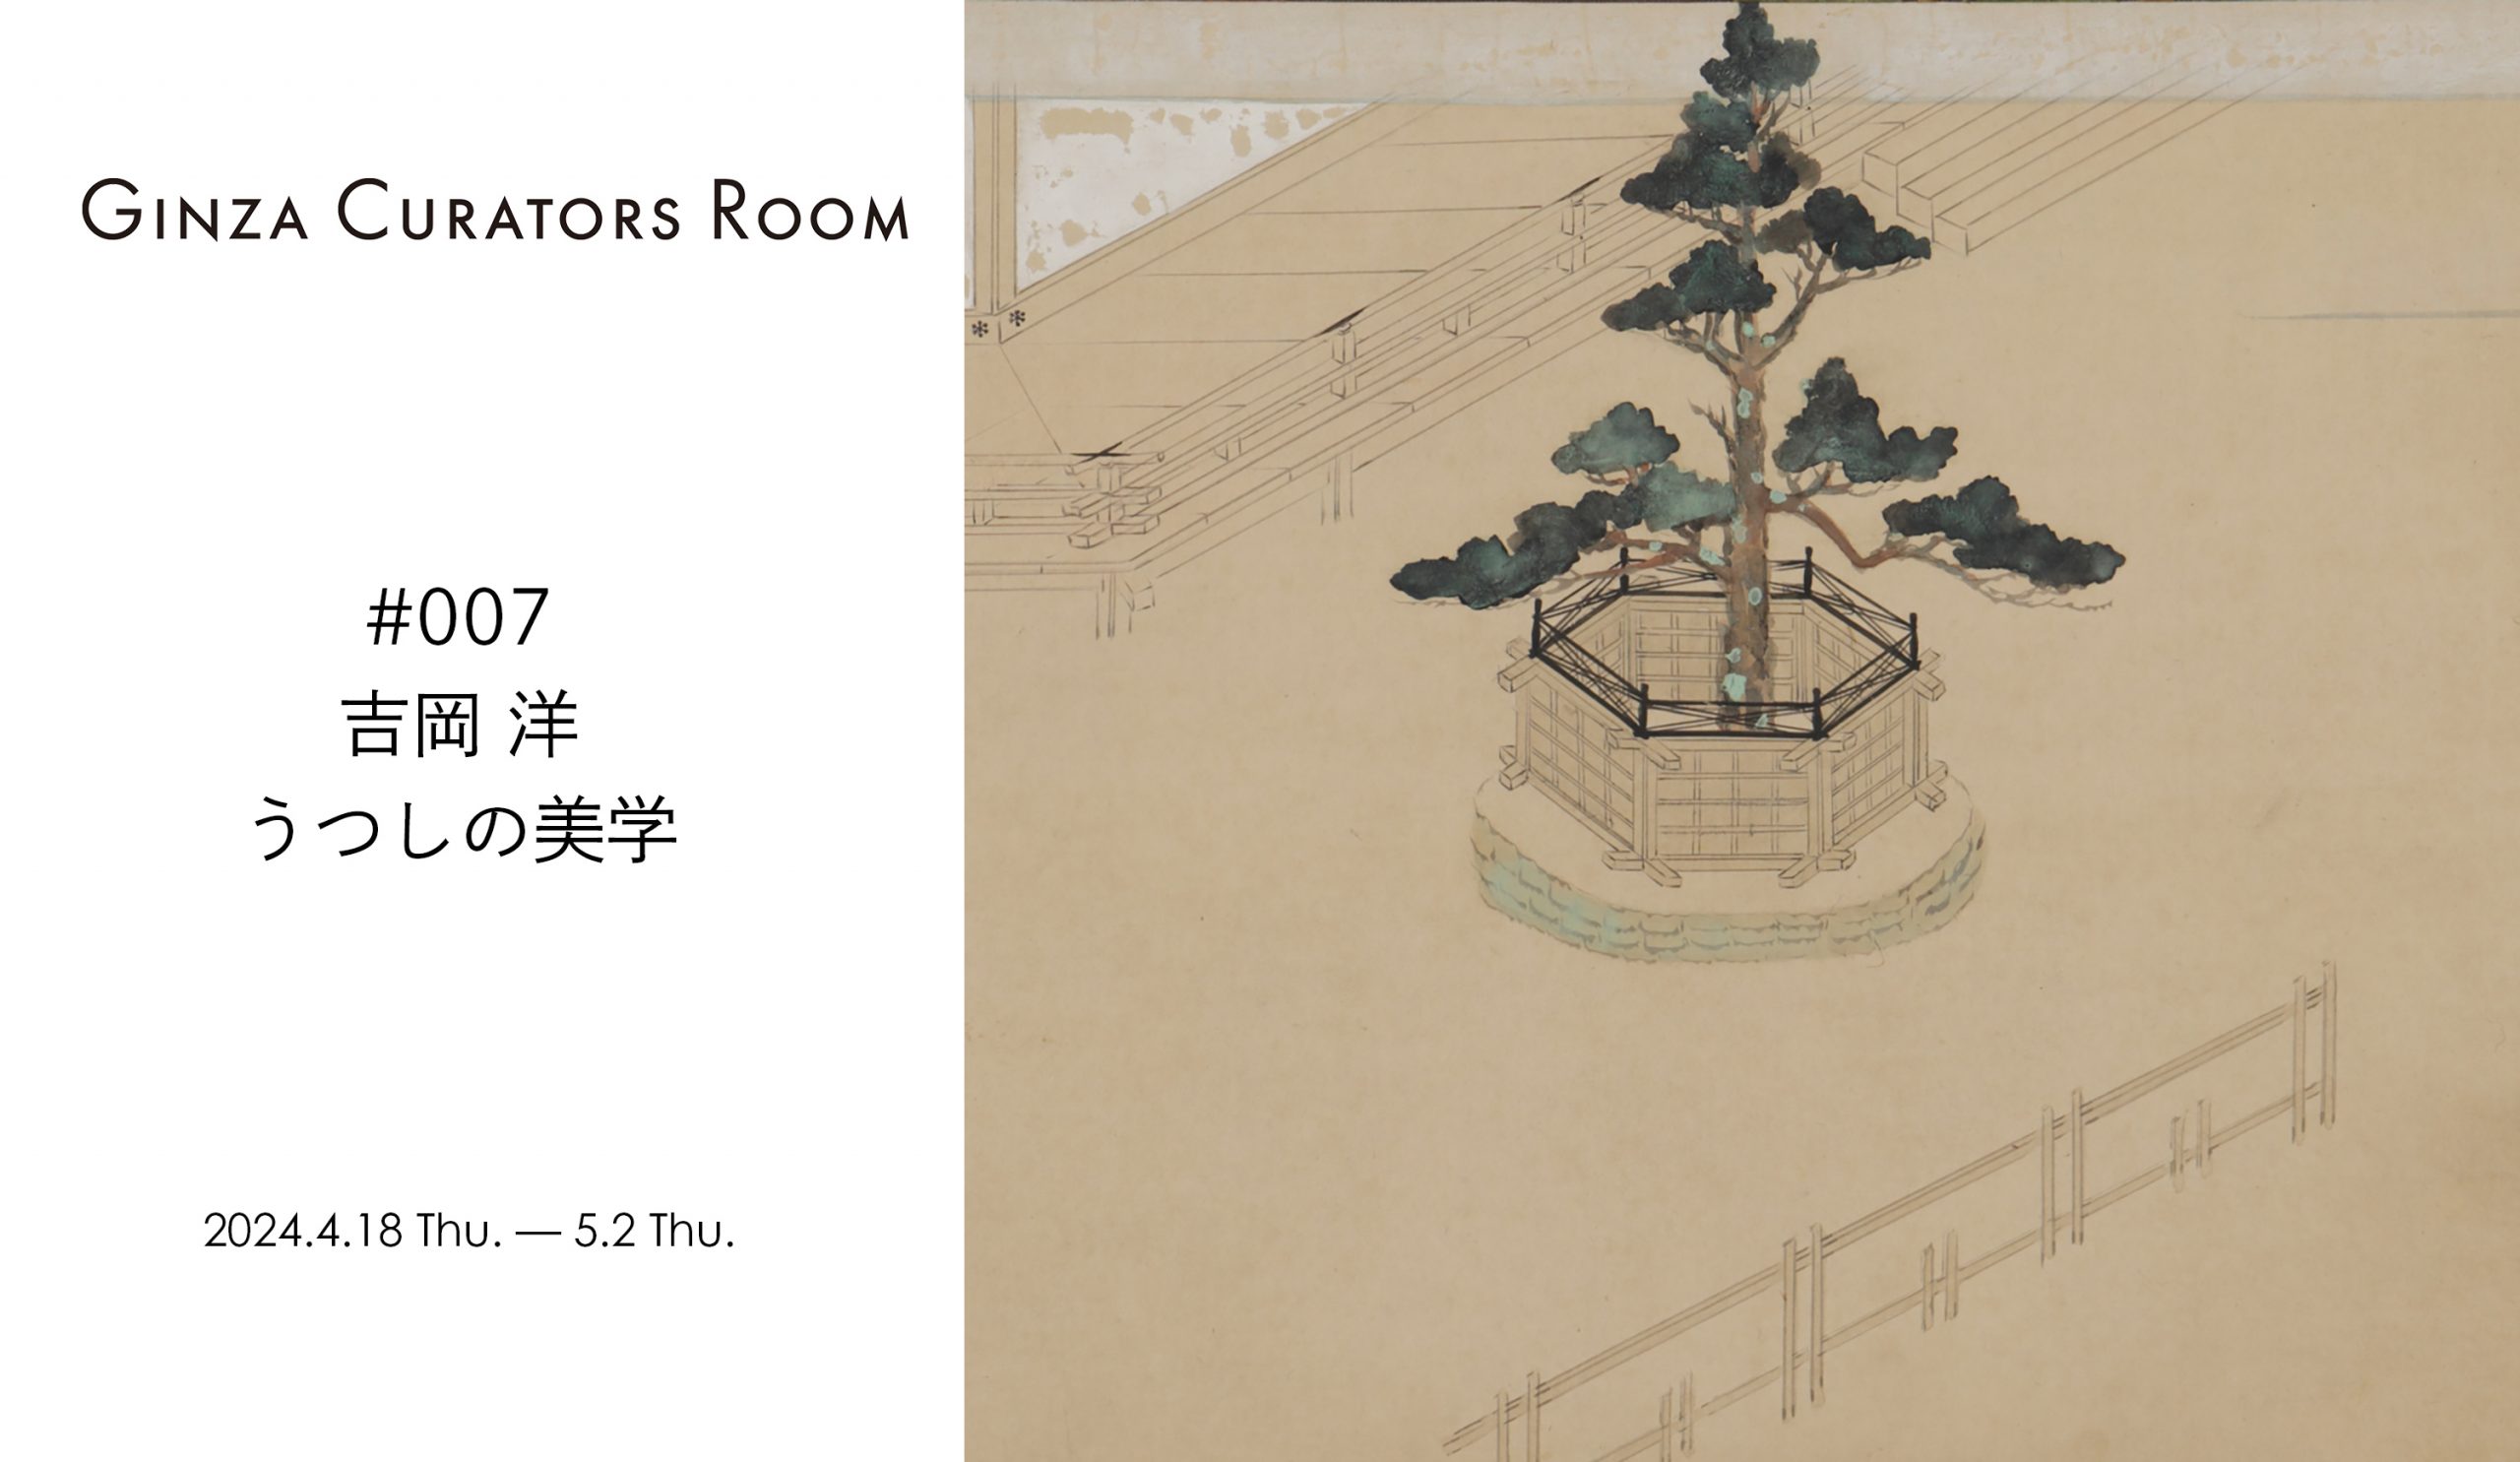 Ginza Curator’s Room #007 吉岡 洋『うつしの美学』